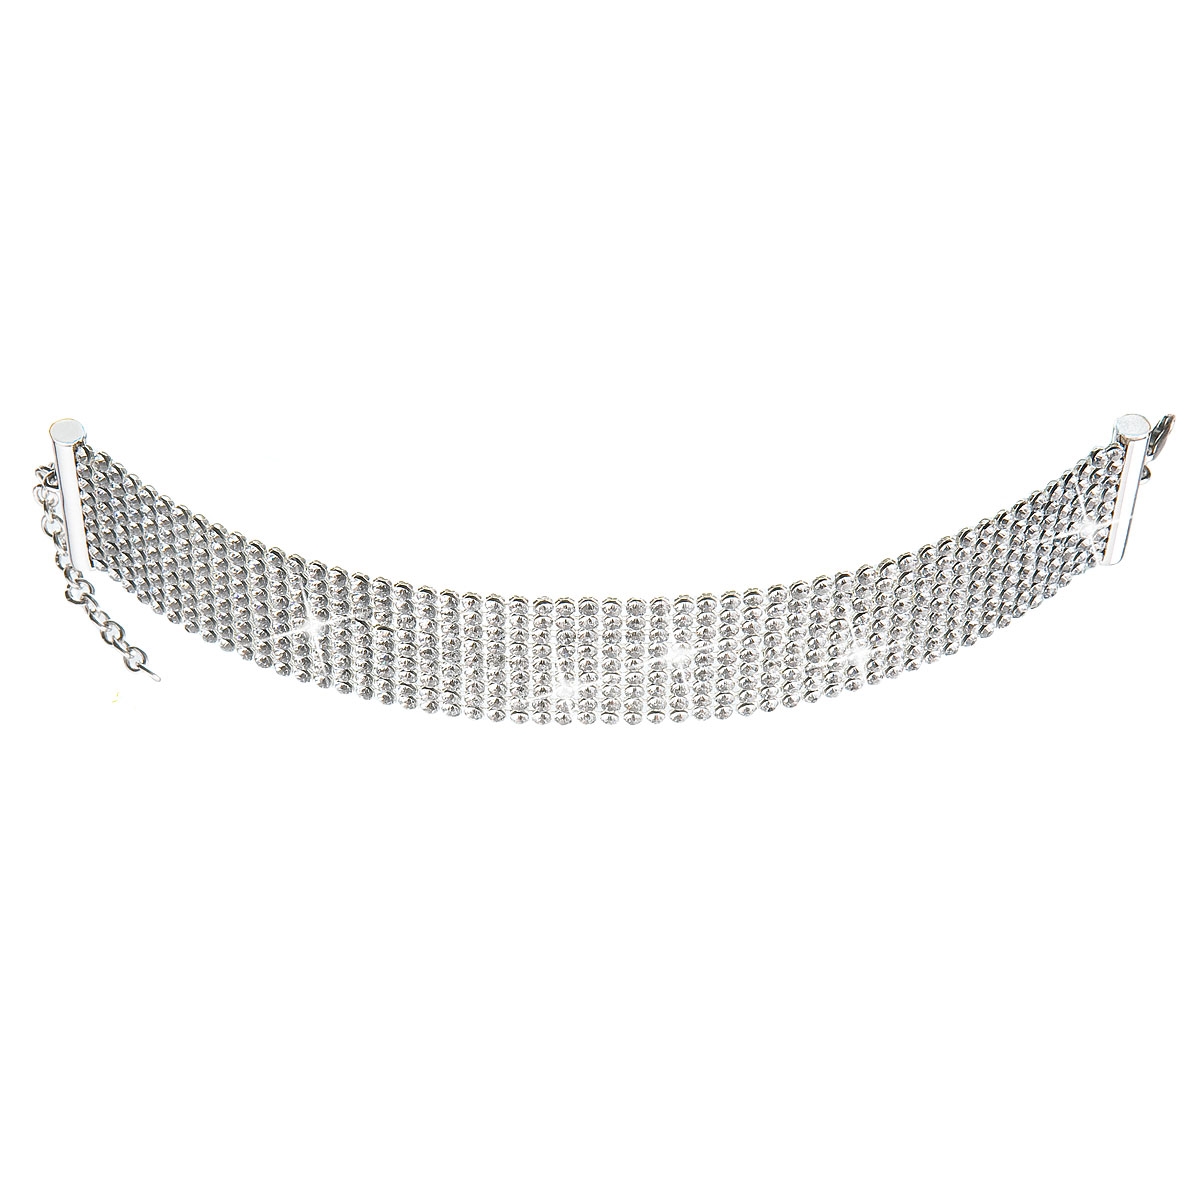 Strieborný náhrdelník opasok s kryštálmi Crystals from Swarovski ®